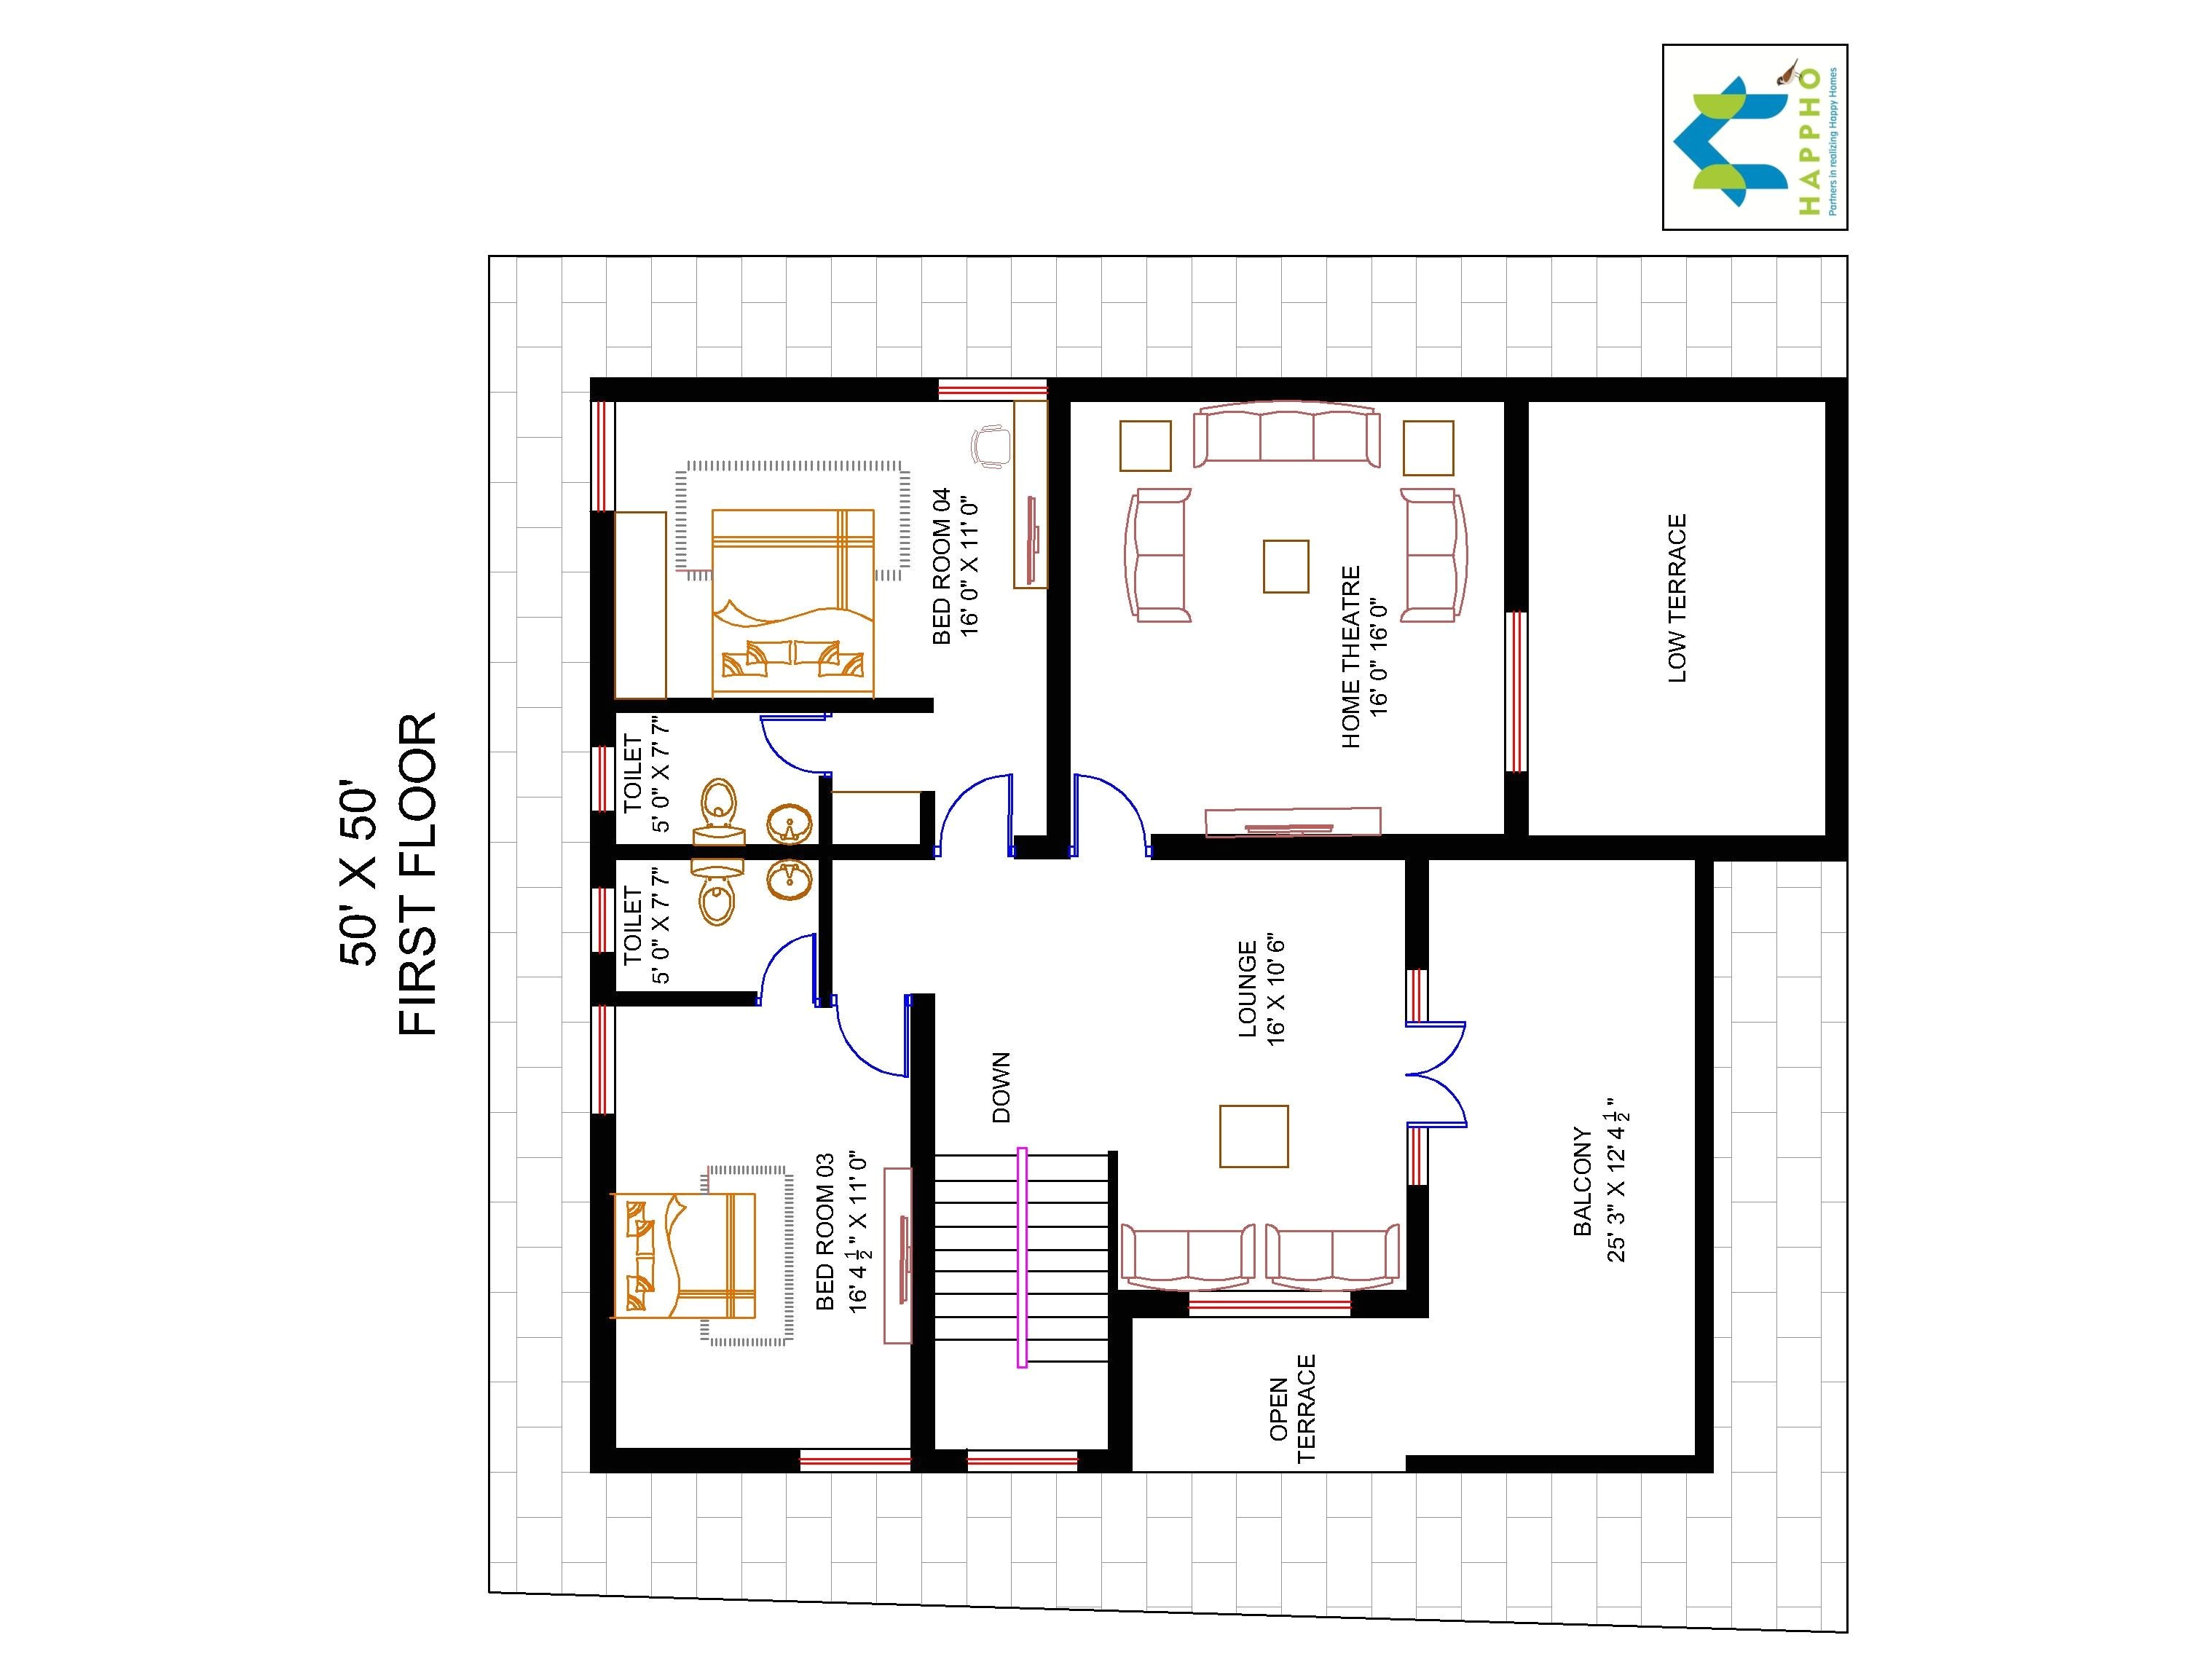 2500 Square Feet Home Plans 2500 Sq Ft Bungalow Floor Plans